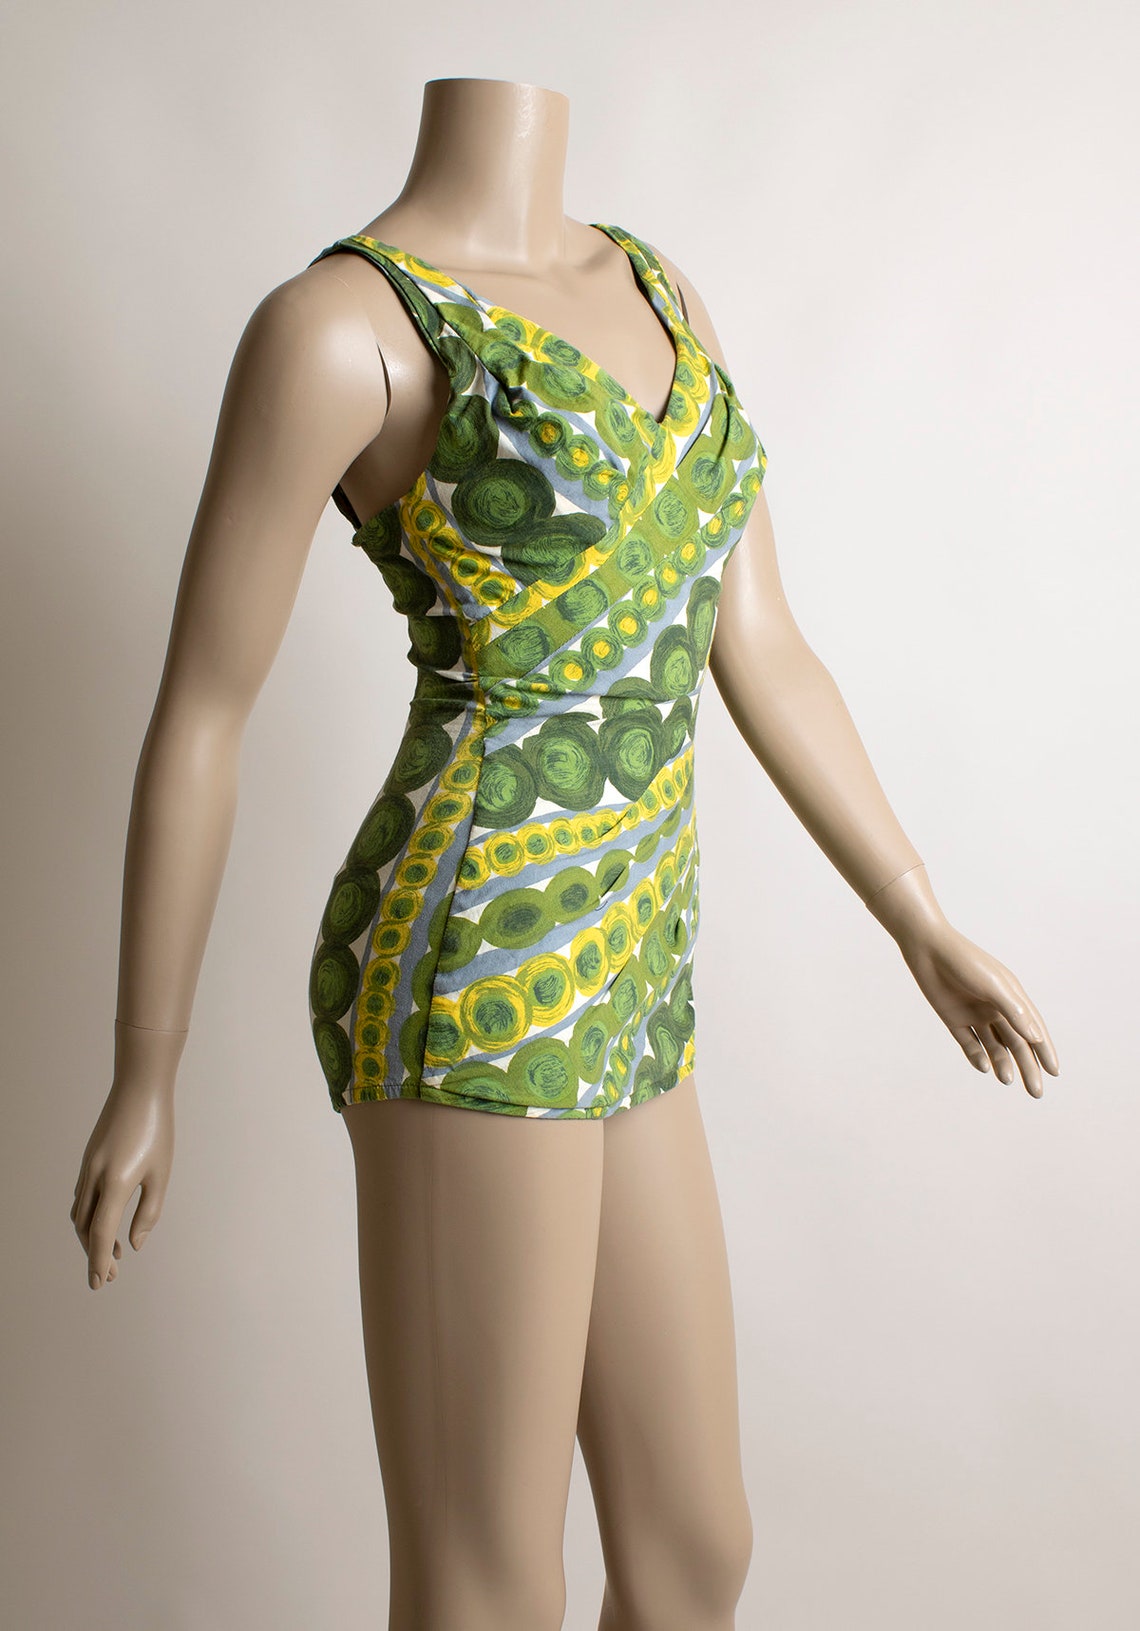 Vintage 1950s Rose Marie Reid Bathing Suit Green & Yellow - Etsy